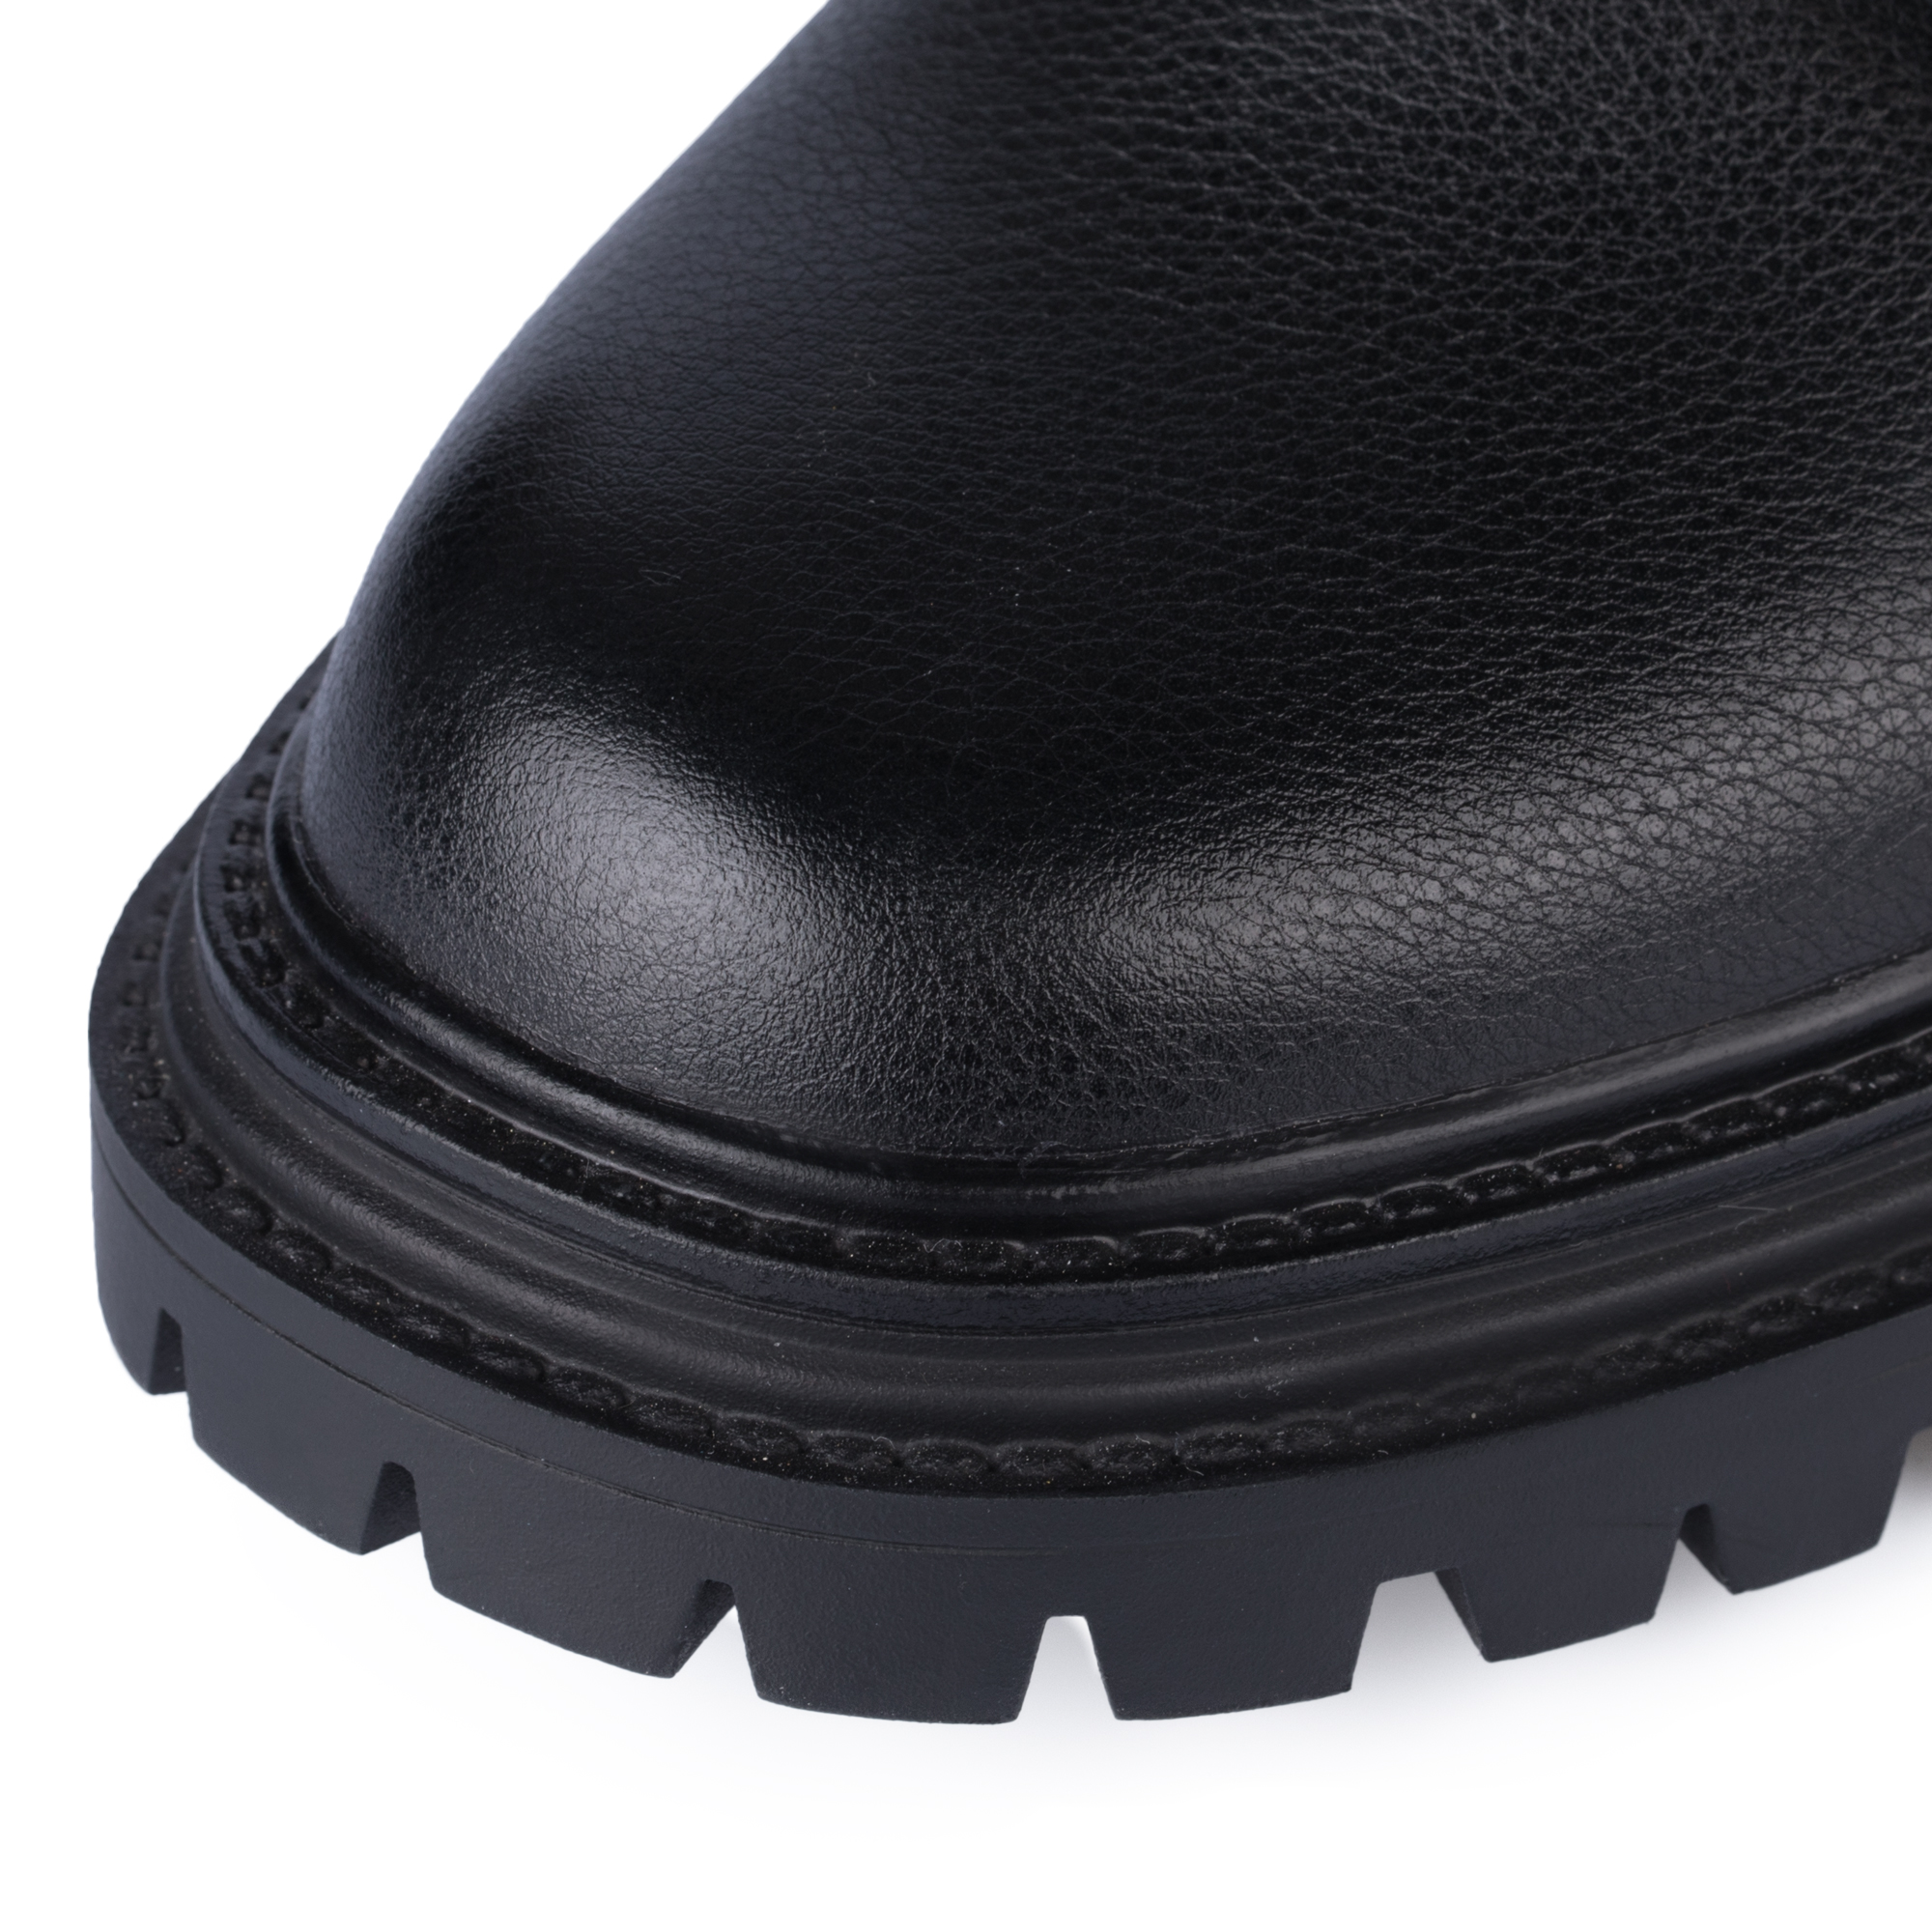 Ботинки Thomas Munz 233-958A-5102, цвет черный, размер 38 - фото 6